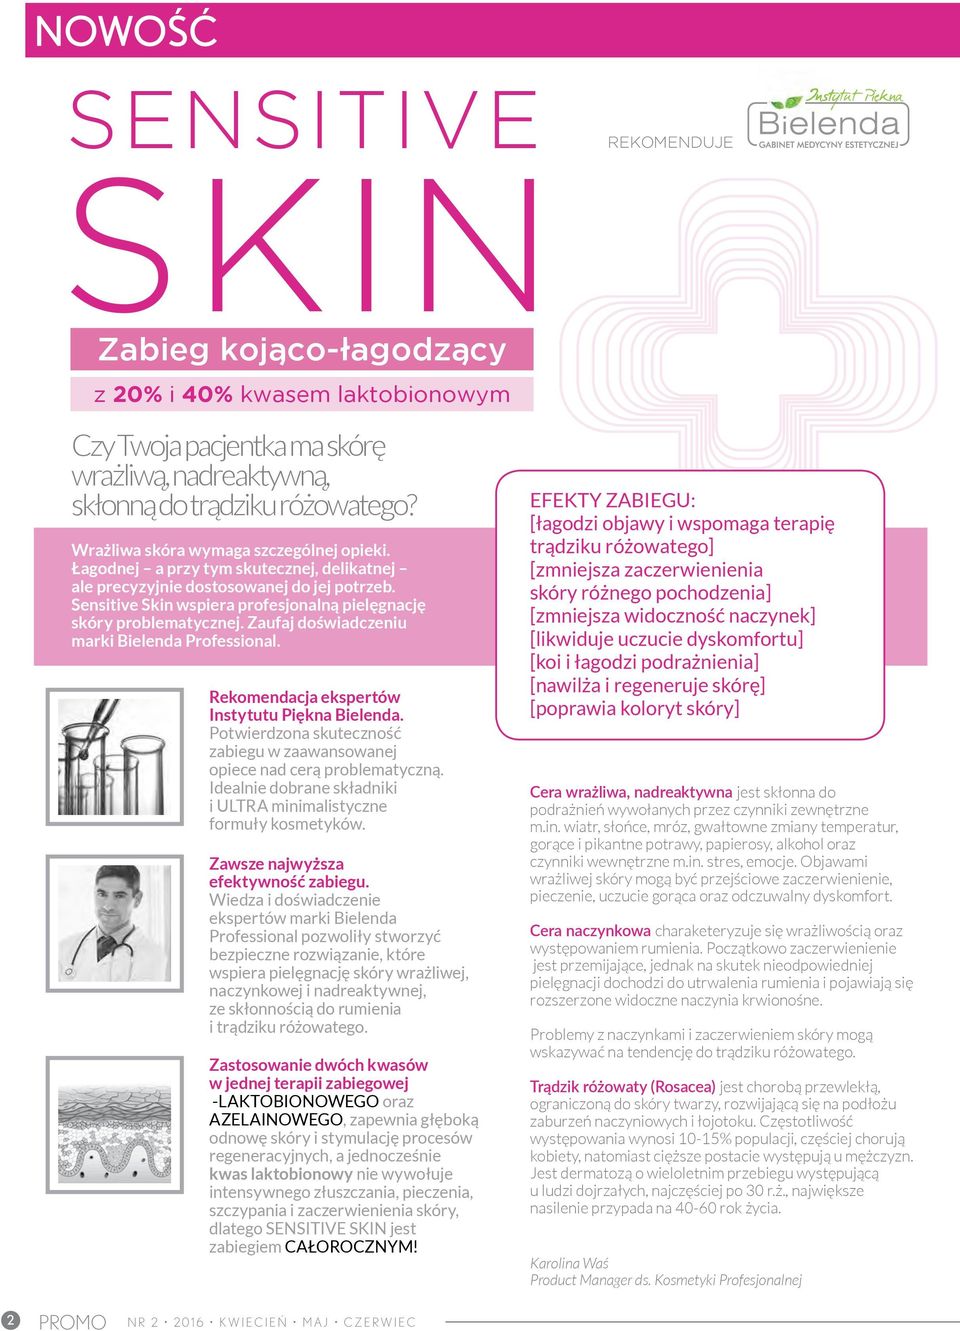 Sensitive Skin wspiera profesjonalną pielęgnację skóry problematycznej. Zaufaj doświadczeniu marki Bielenda Professional. Rekomendacja ekspertów Instytutu Piękna Bielenda.